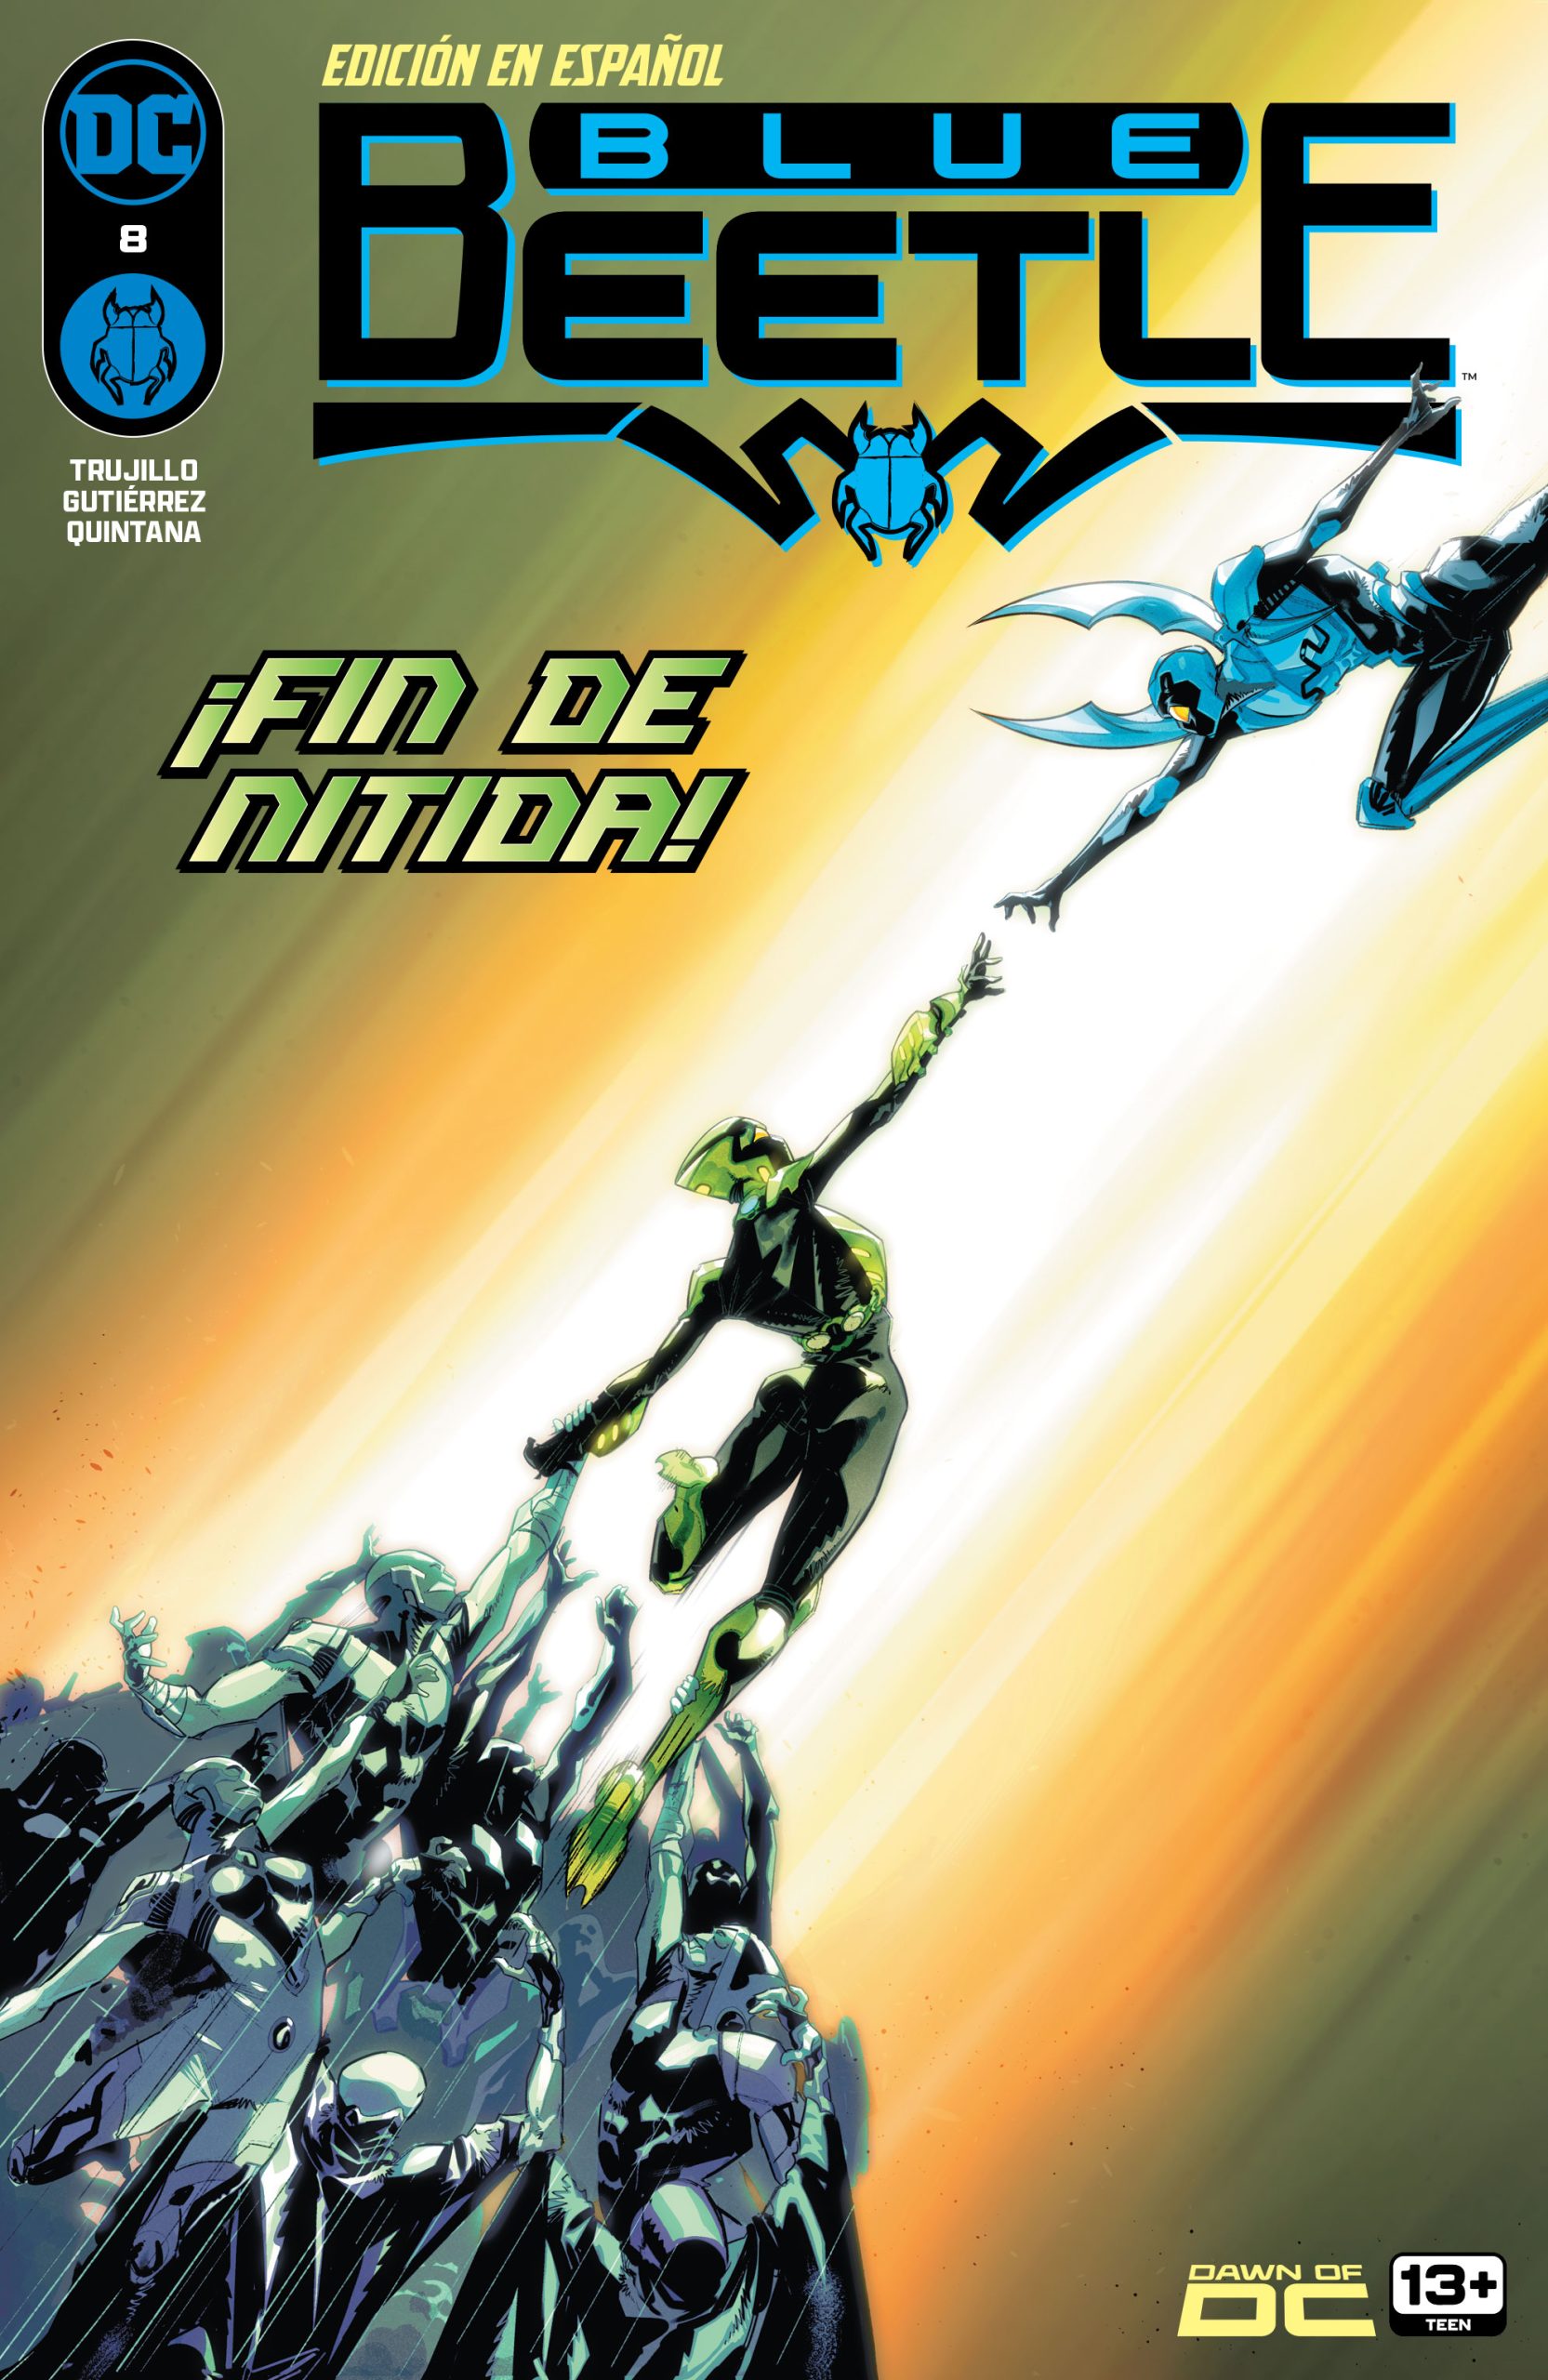 DC Preview: Blue Beetle #8 (Edición en Español)